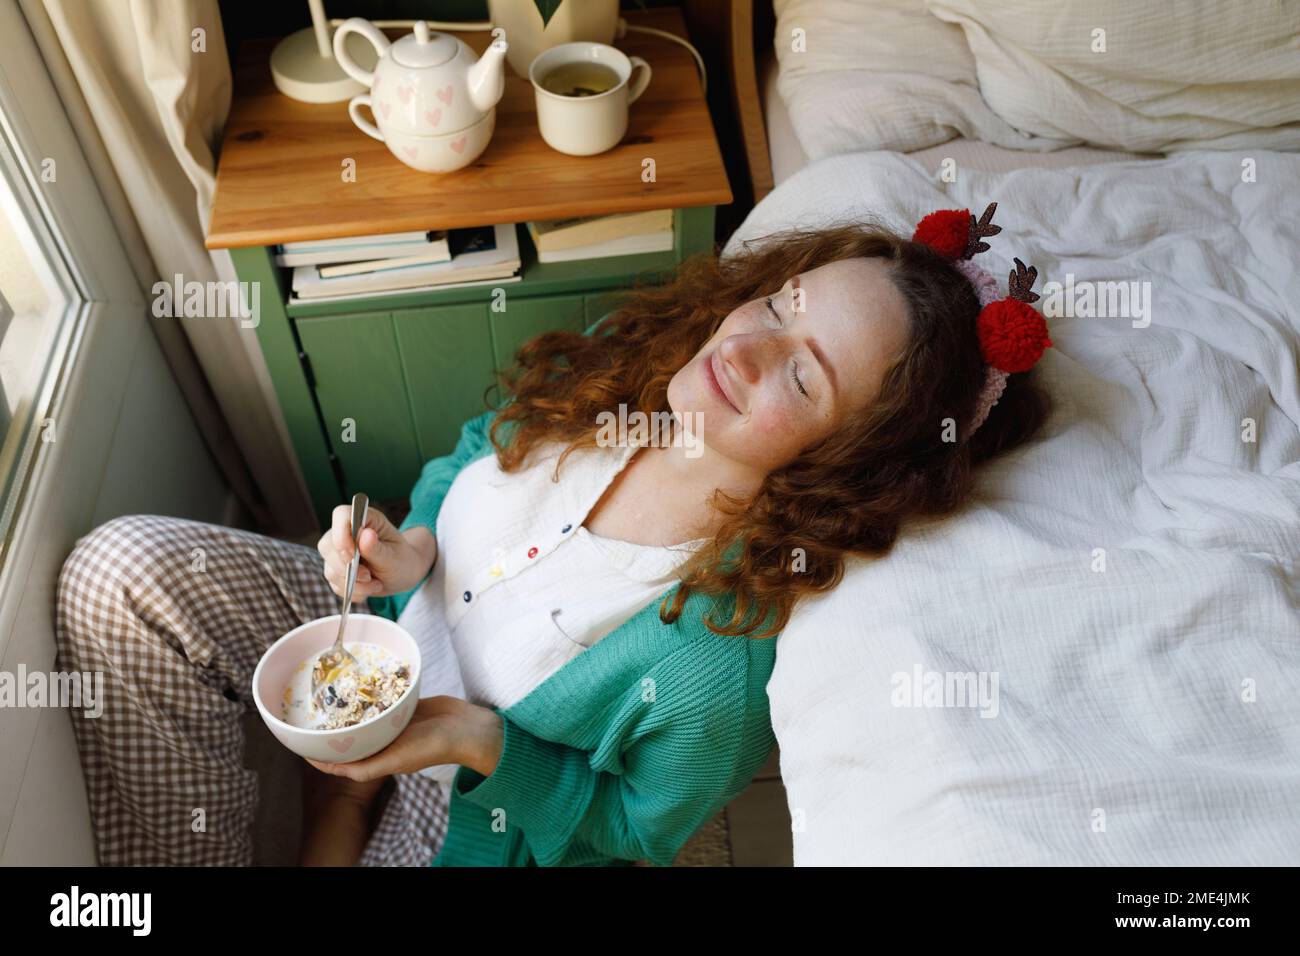 Lächelnde Frau mit geschlossenen Augen, die zu Hause eine Müslischale am Bett hält Stockfoto